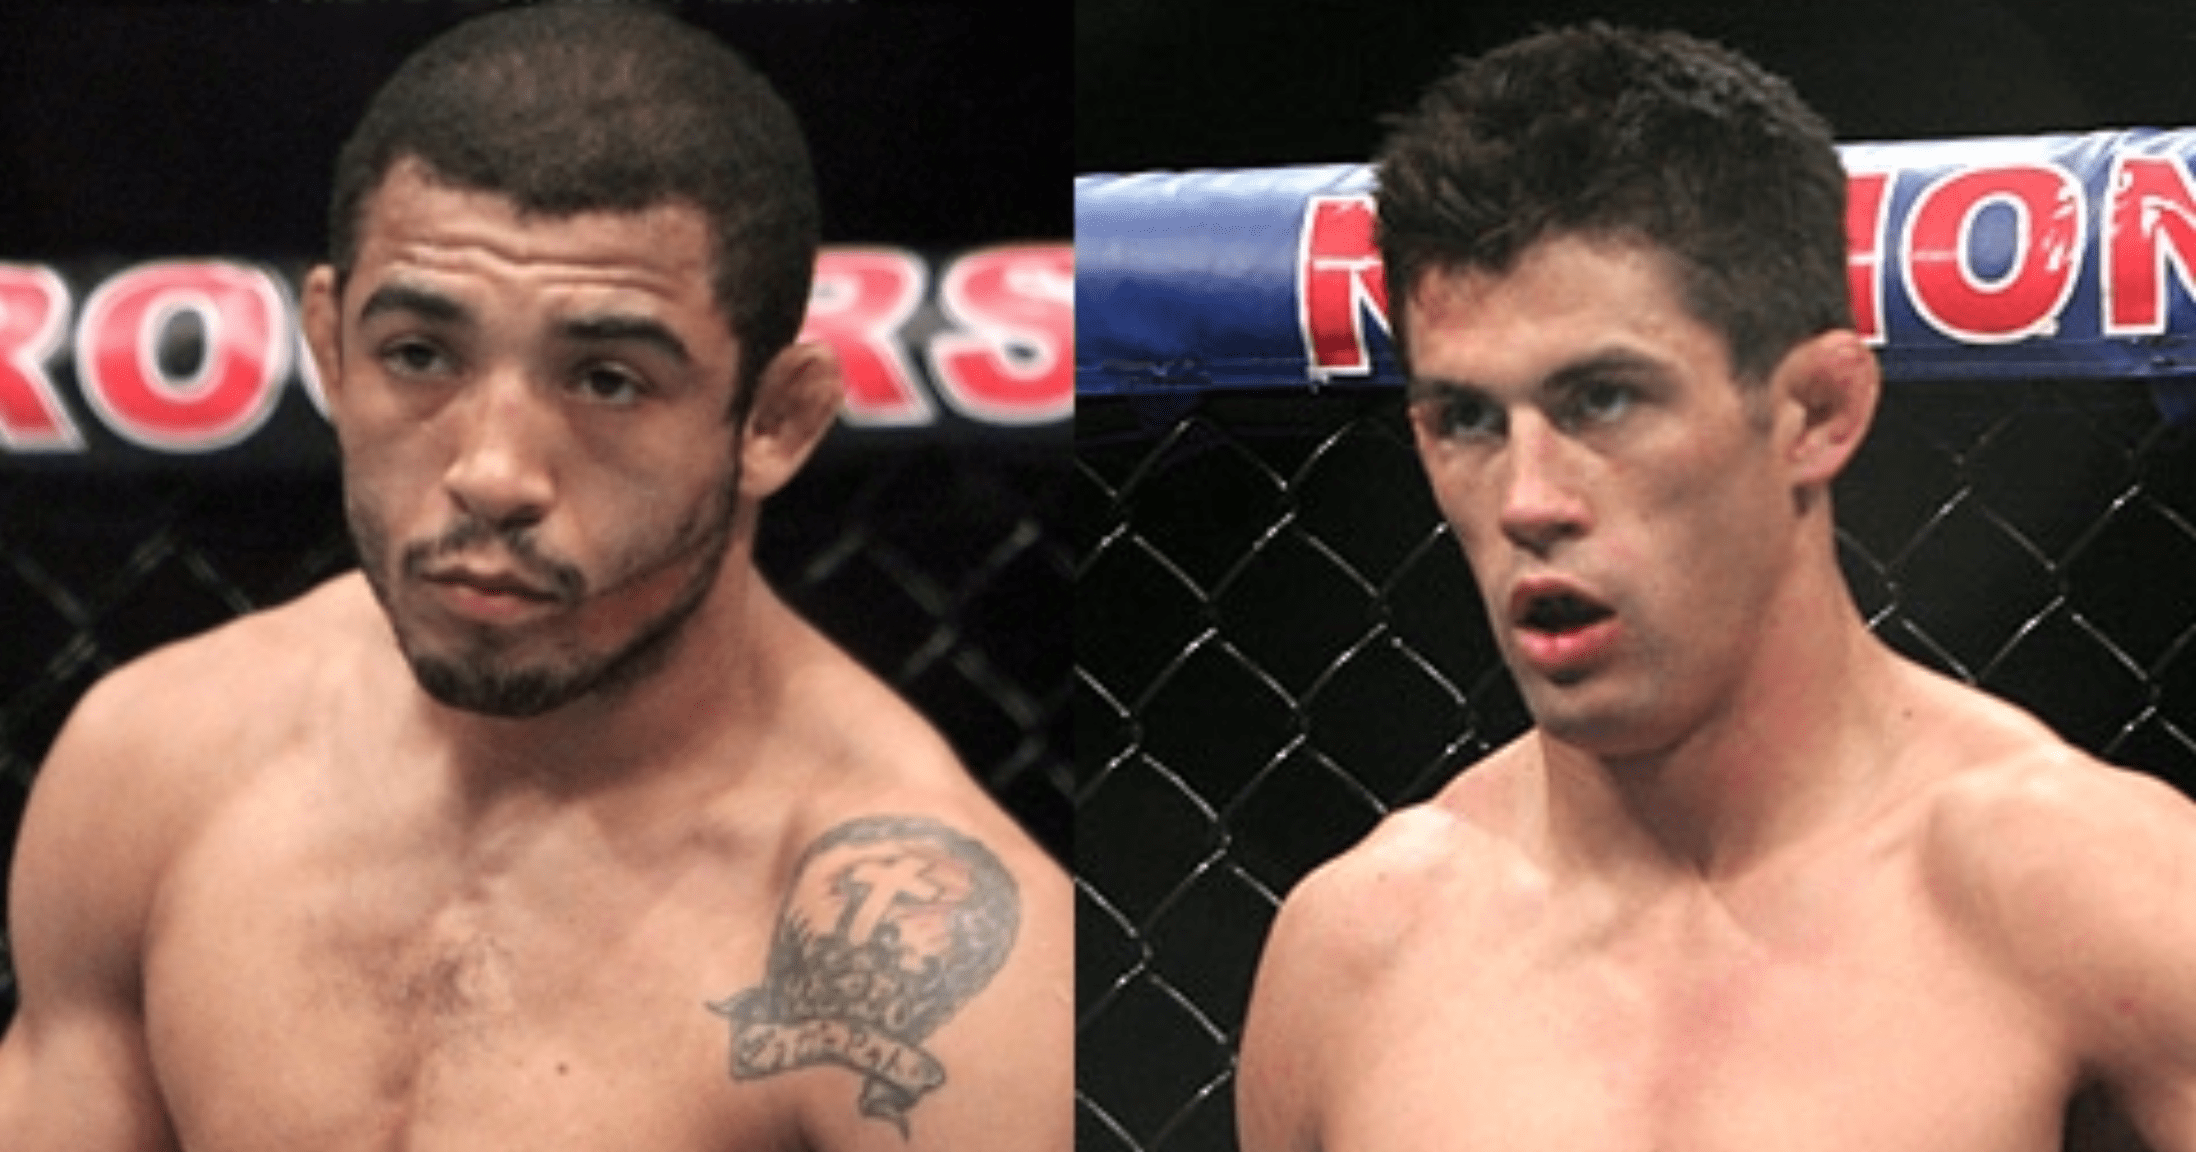 UFC: Jose Aldo Calls Out Dominick Cruz